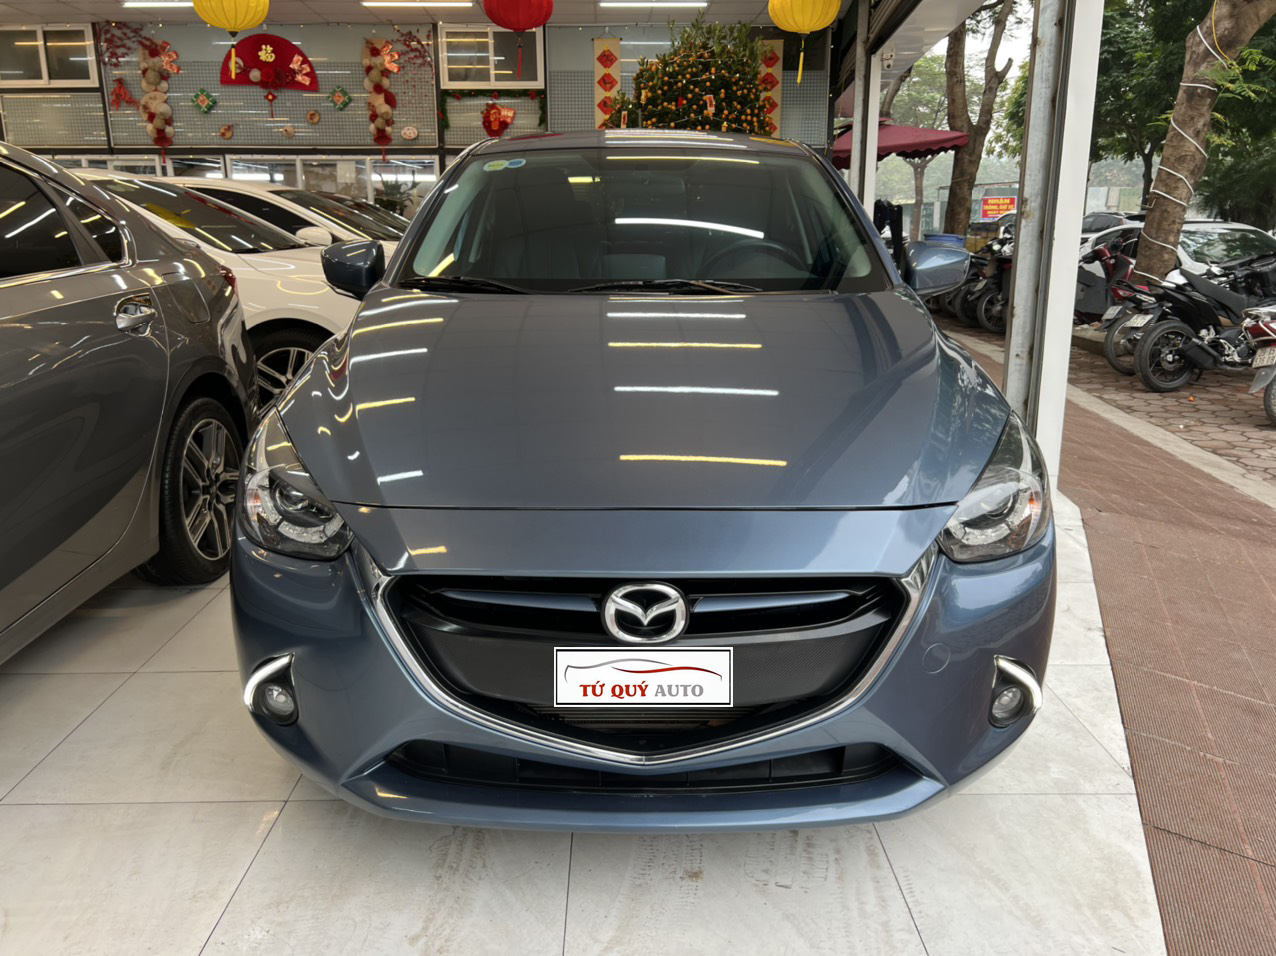 Hình ảnh nội thất Mazda 2 và Video chi tiết | Auto5